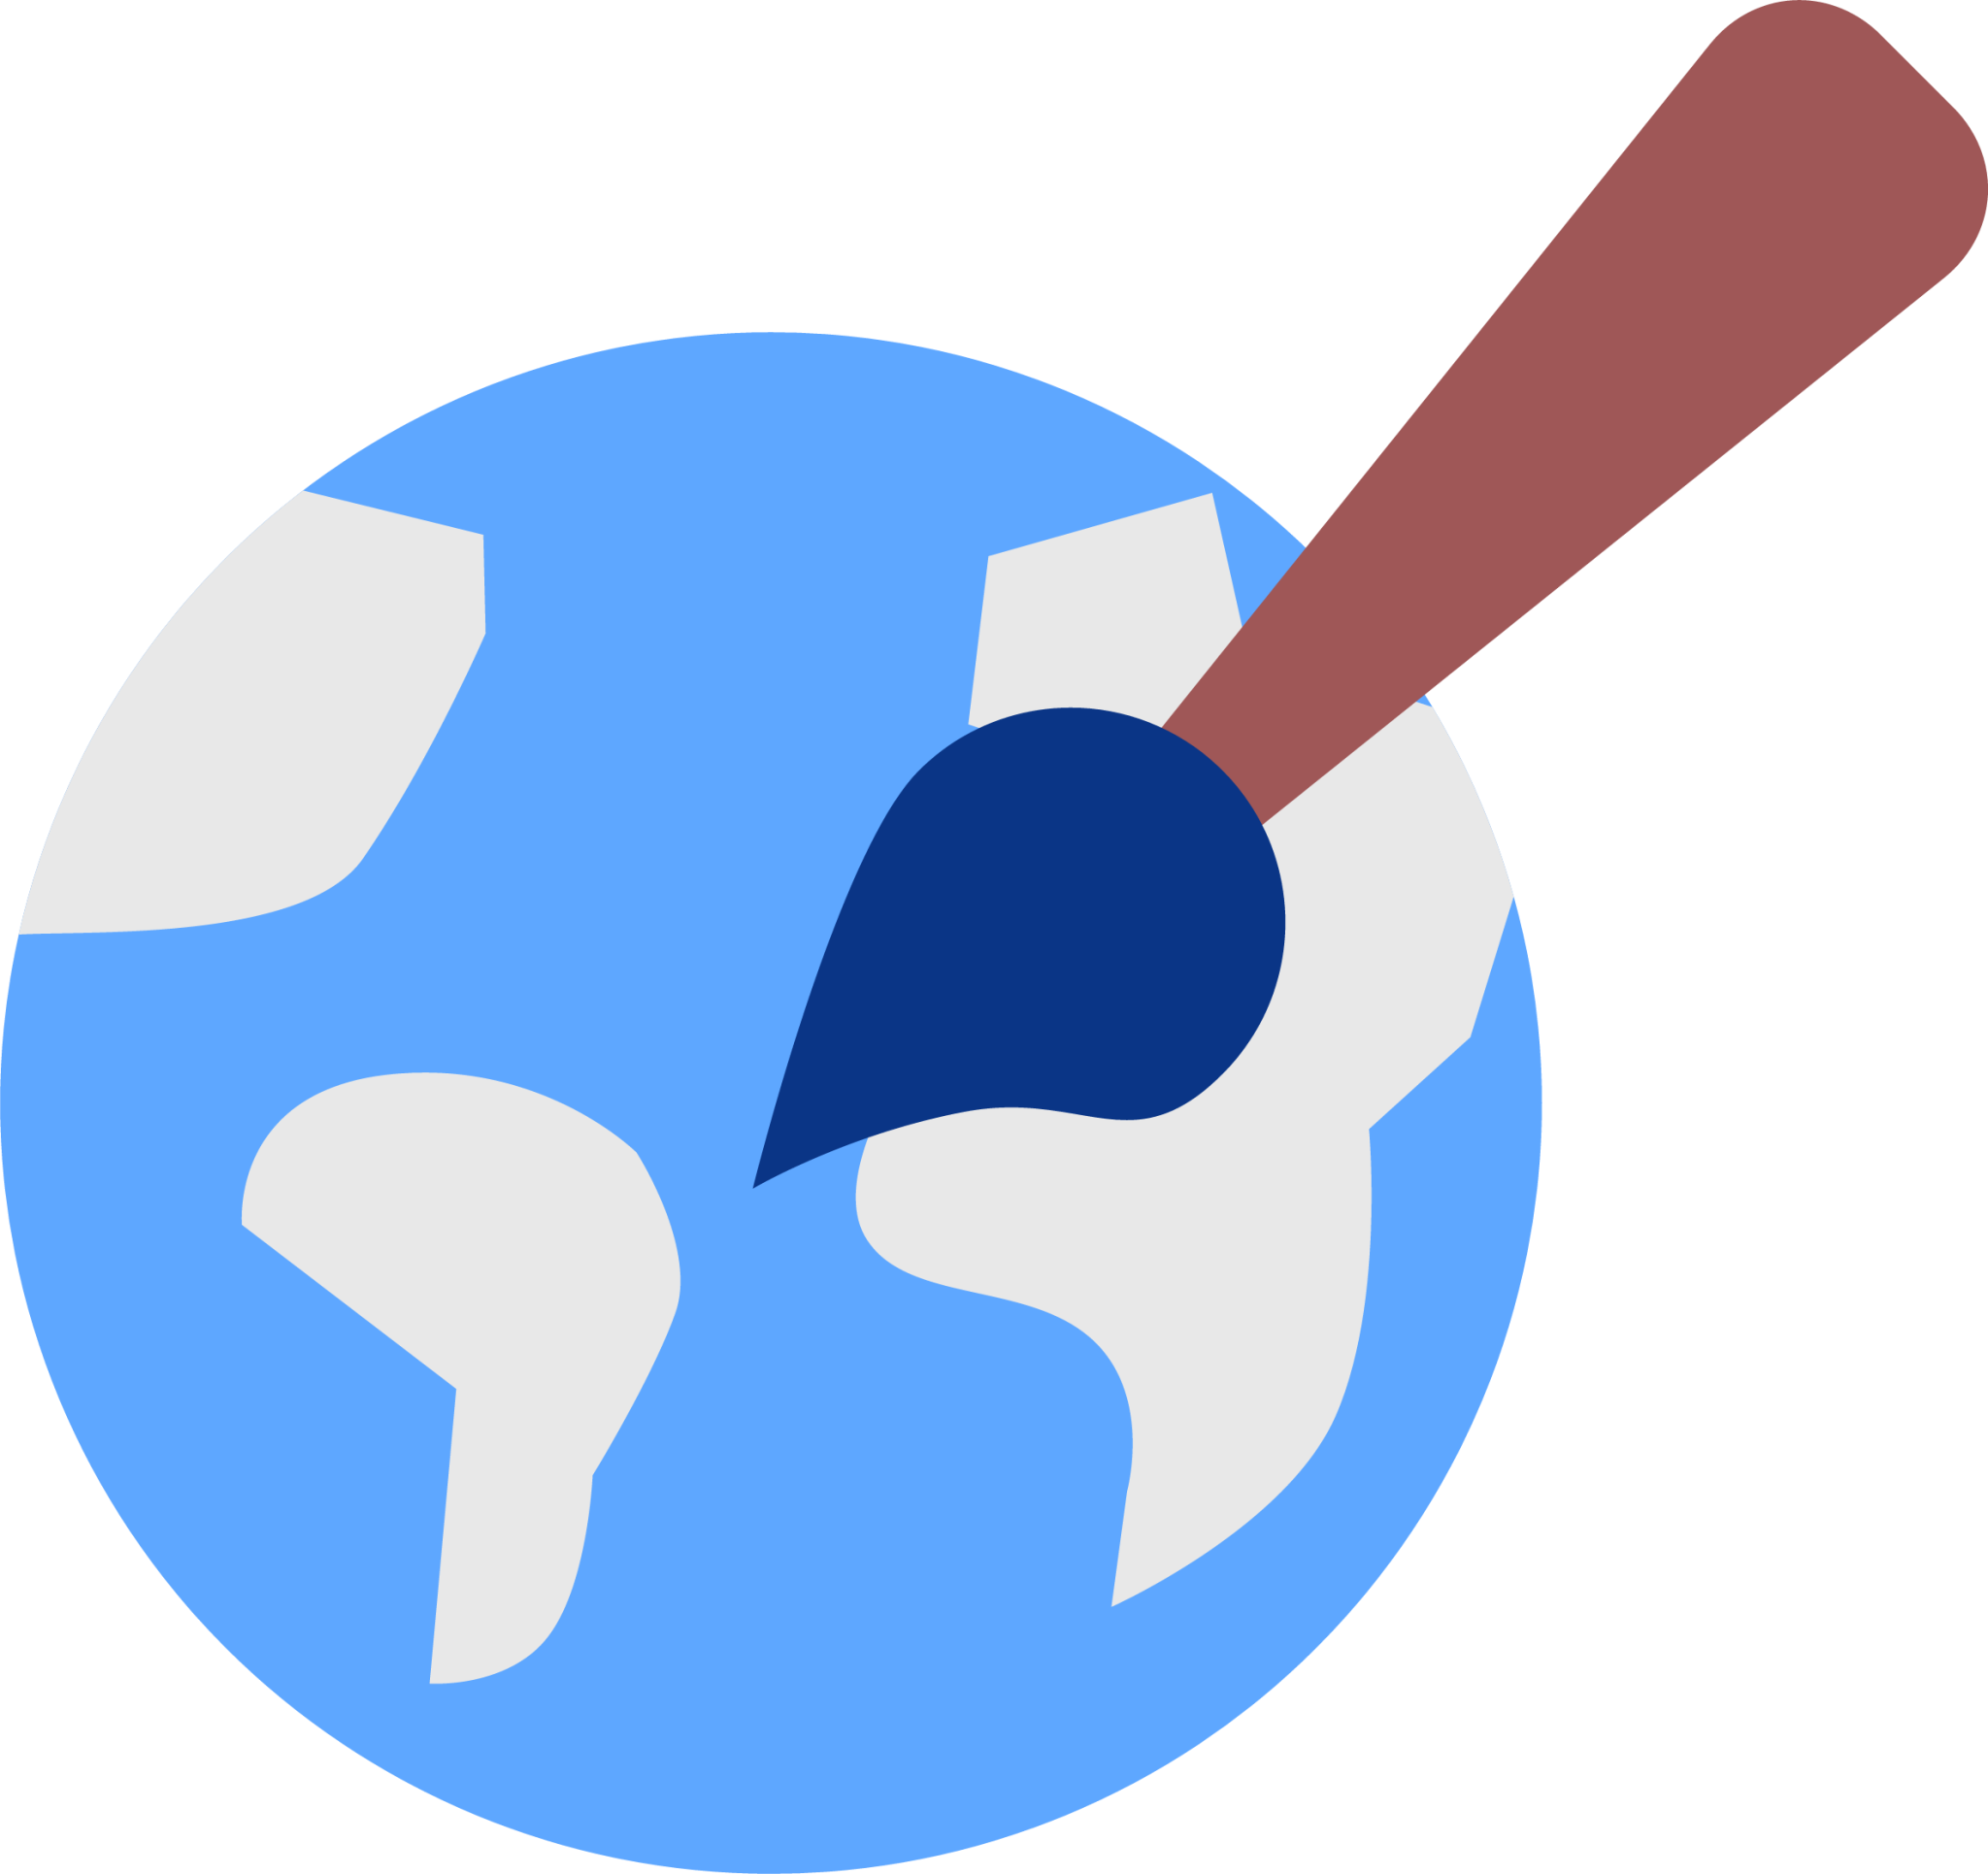 web brush icon